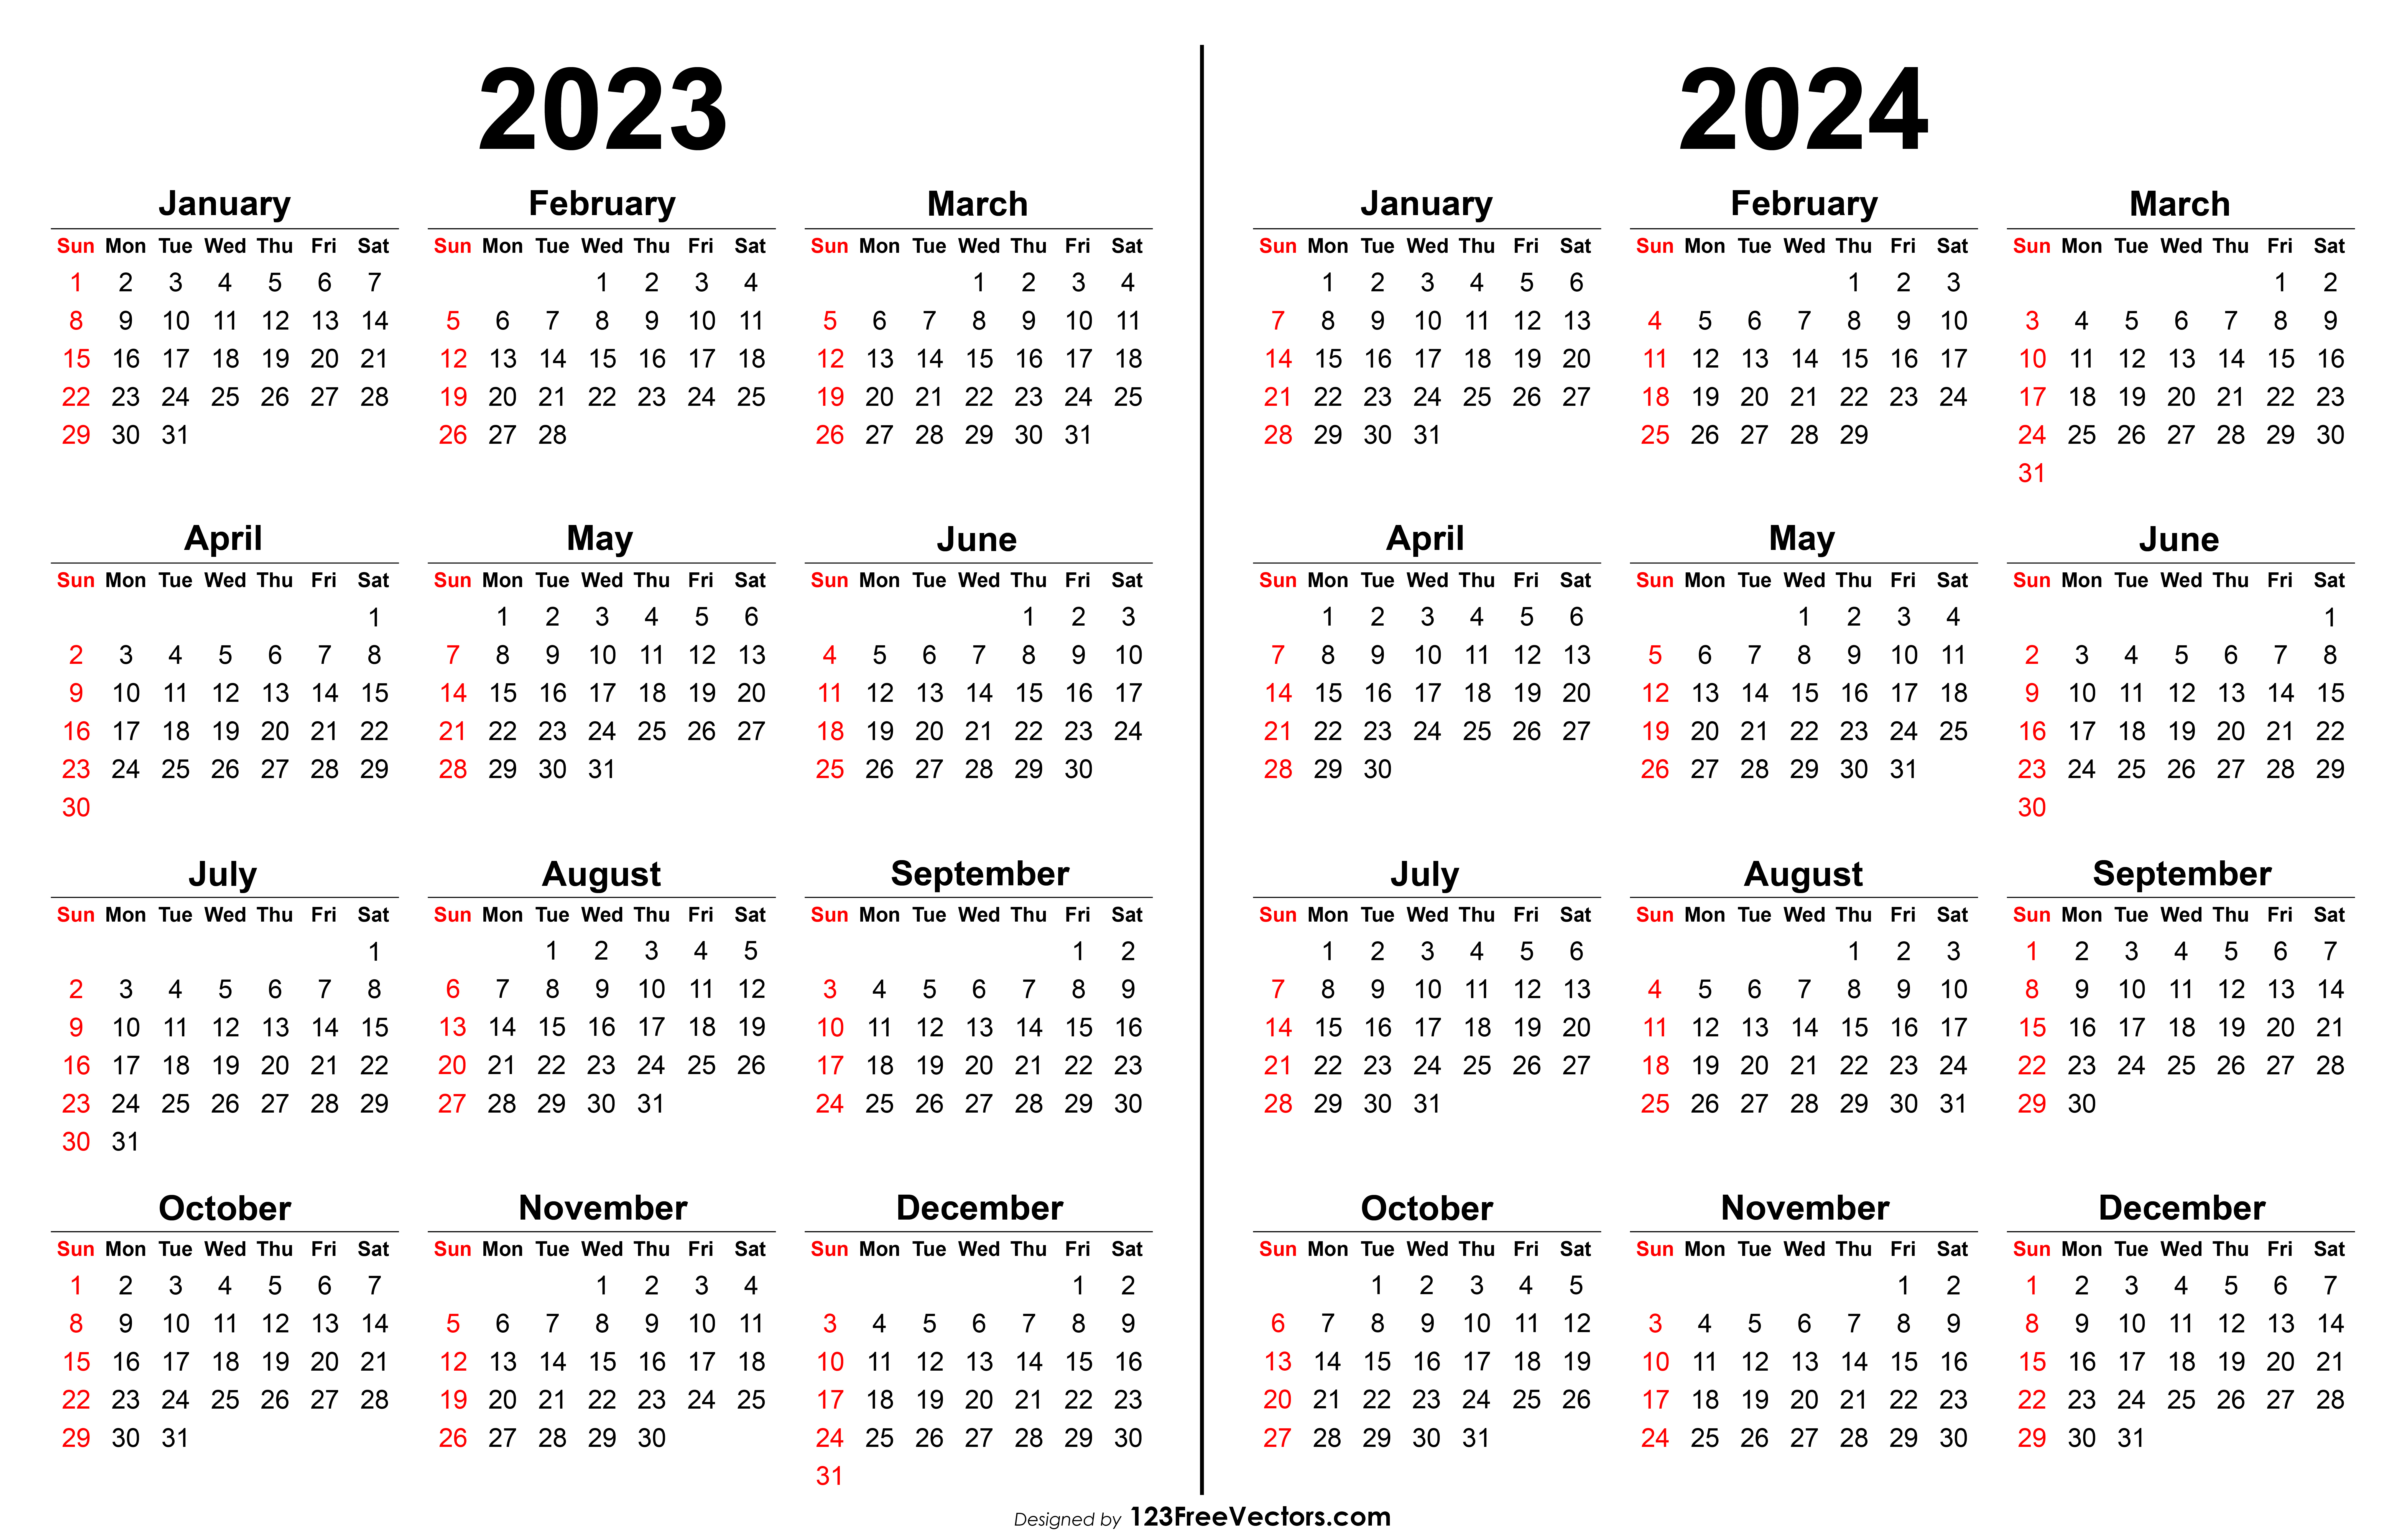 Free 2023 2024 Calendar | Printable Calendar 2023 And 2024 Free